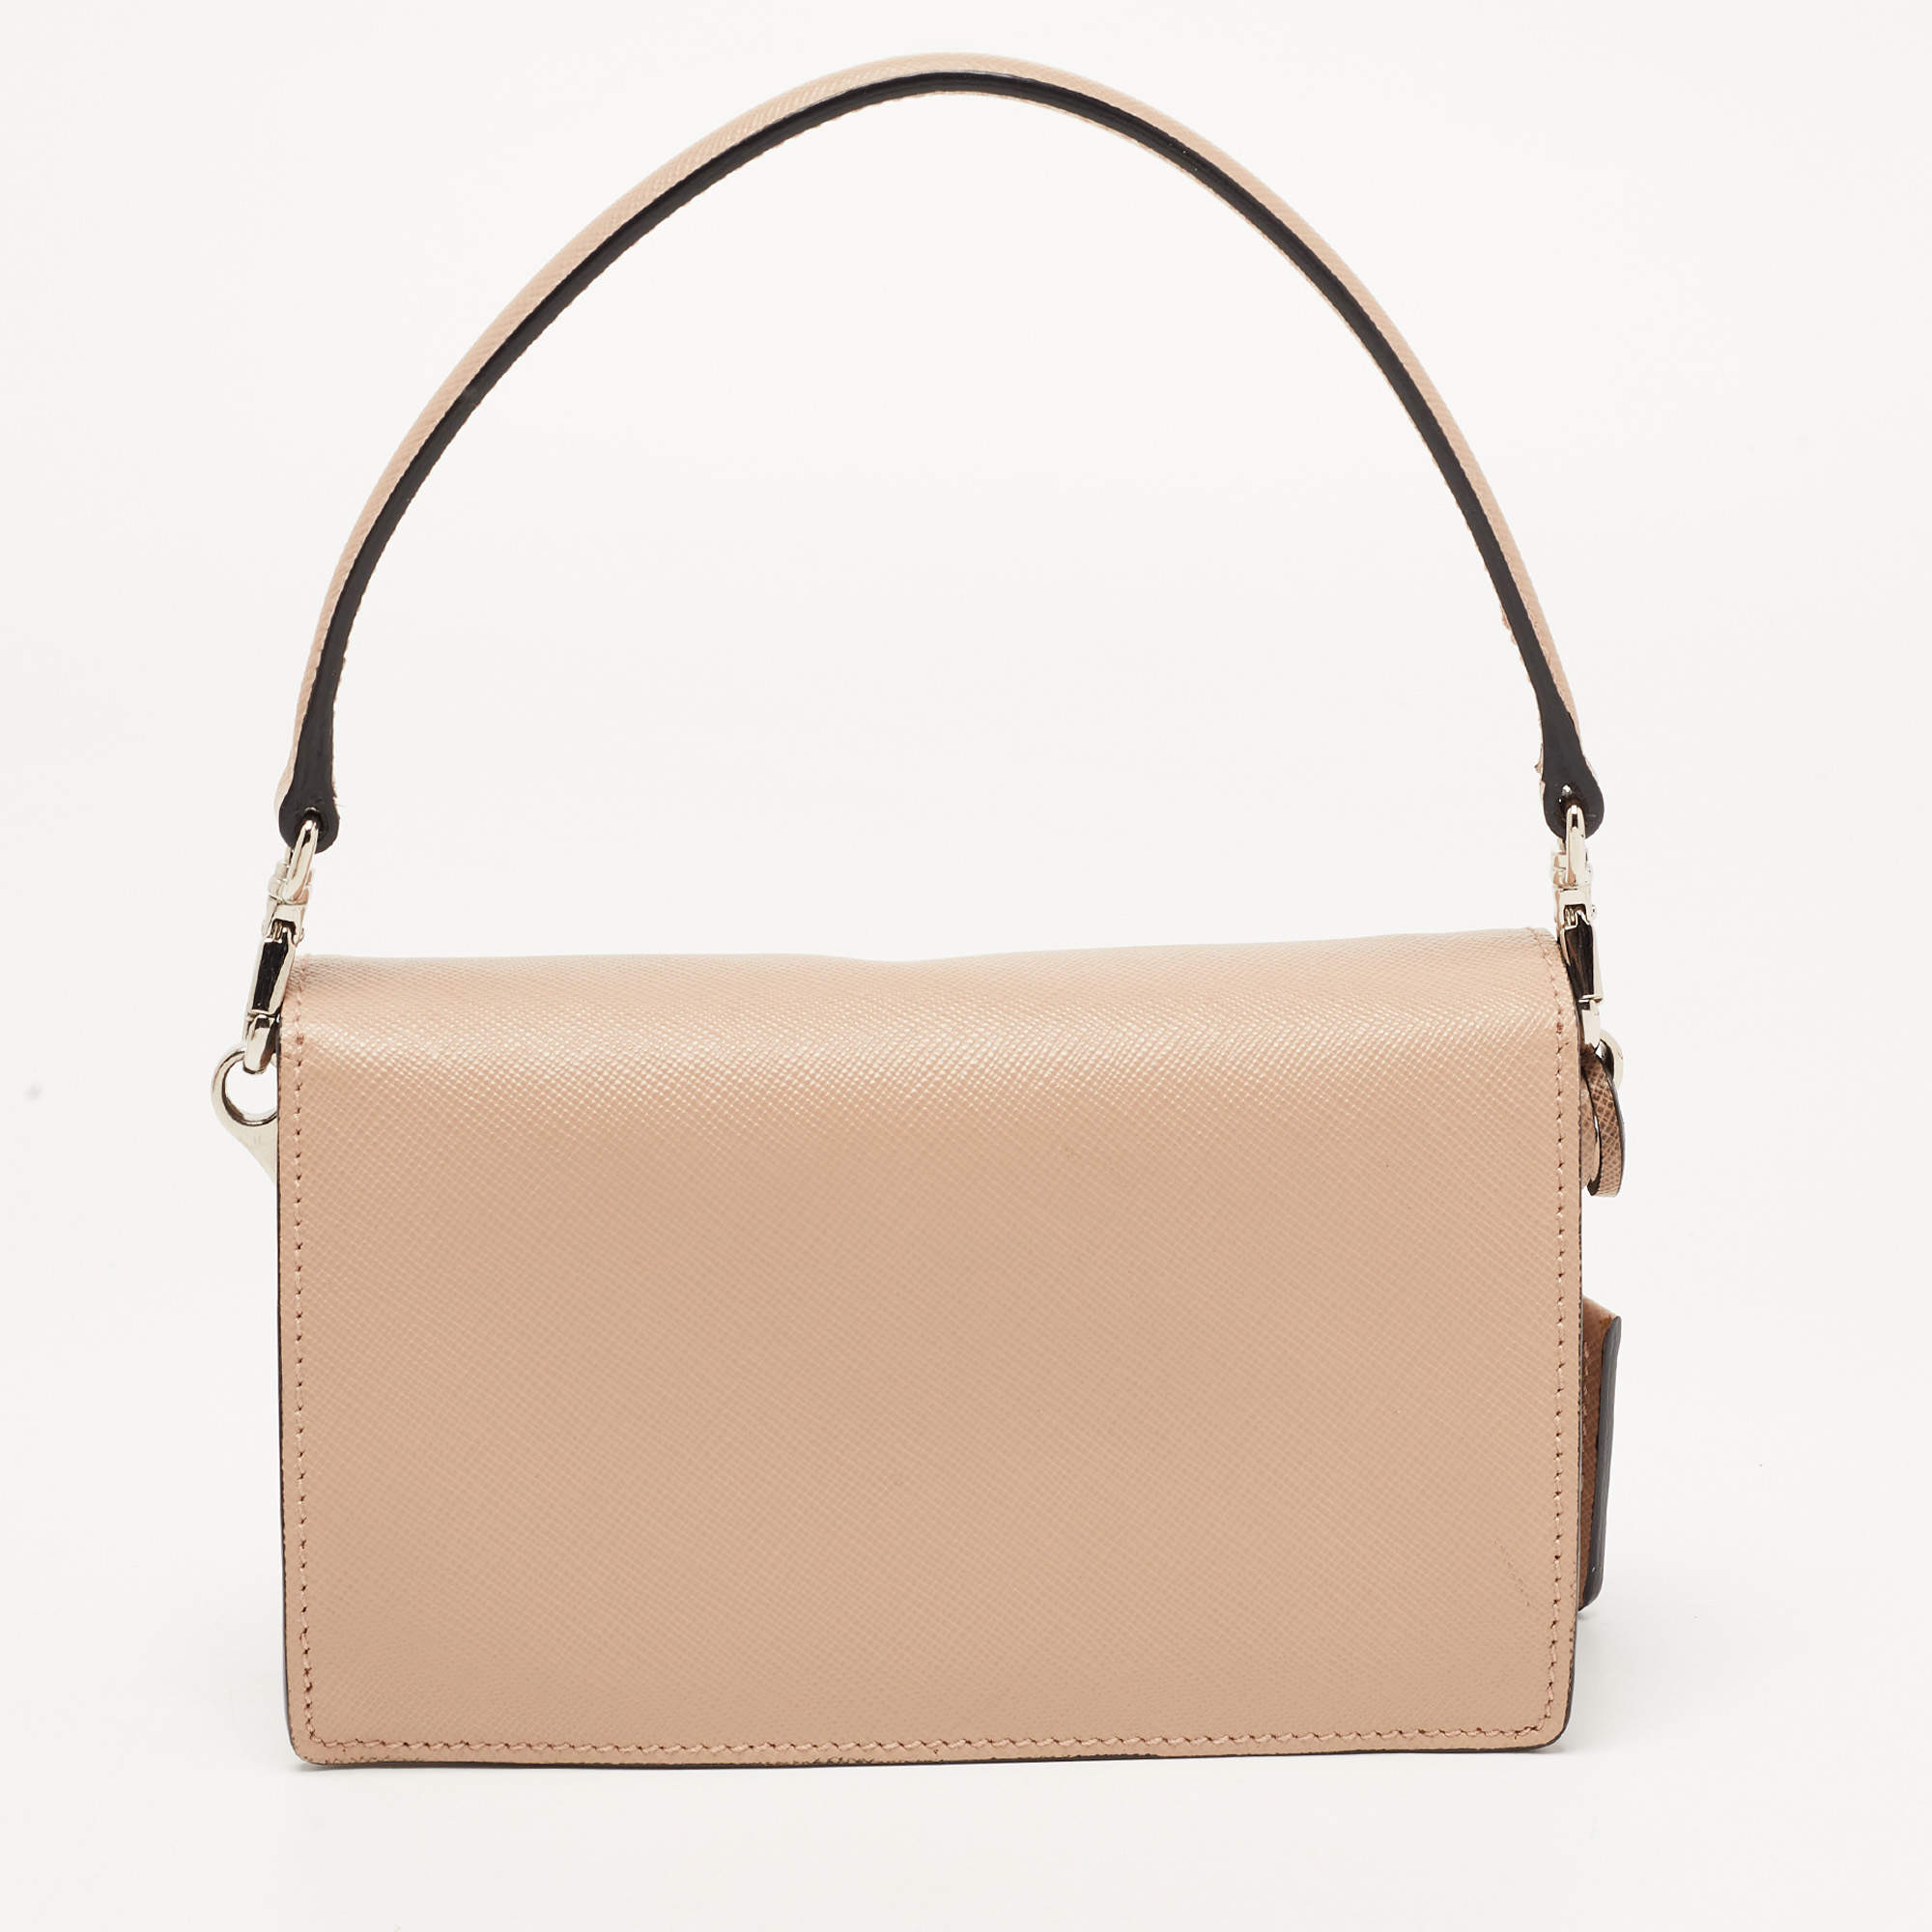 Prada Tricolor Saffiano Sound Bag - Brown Crossbody Bags, Handbags -  PRA160227